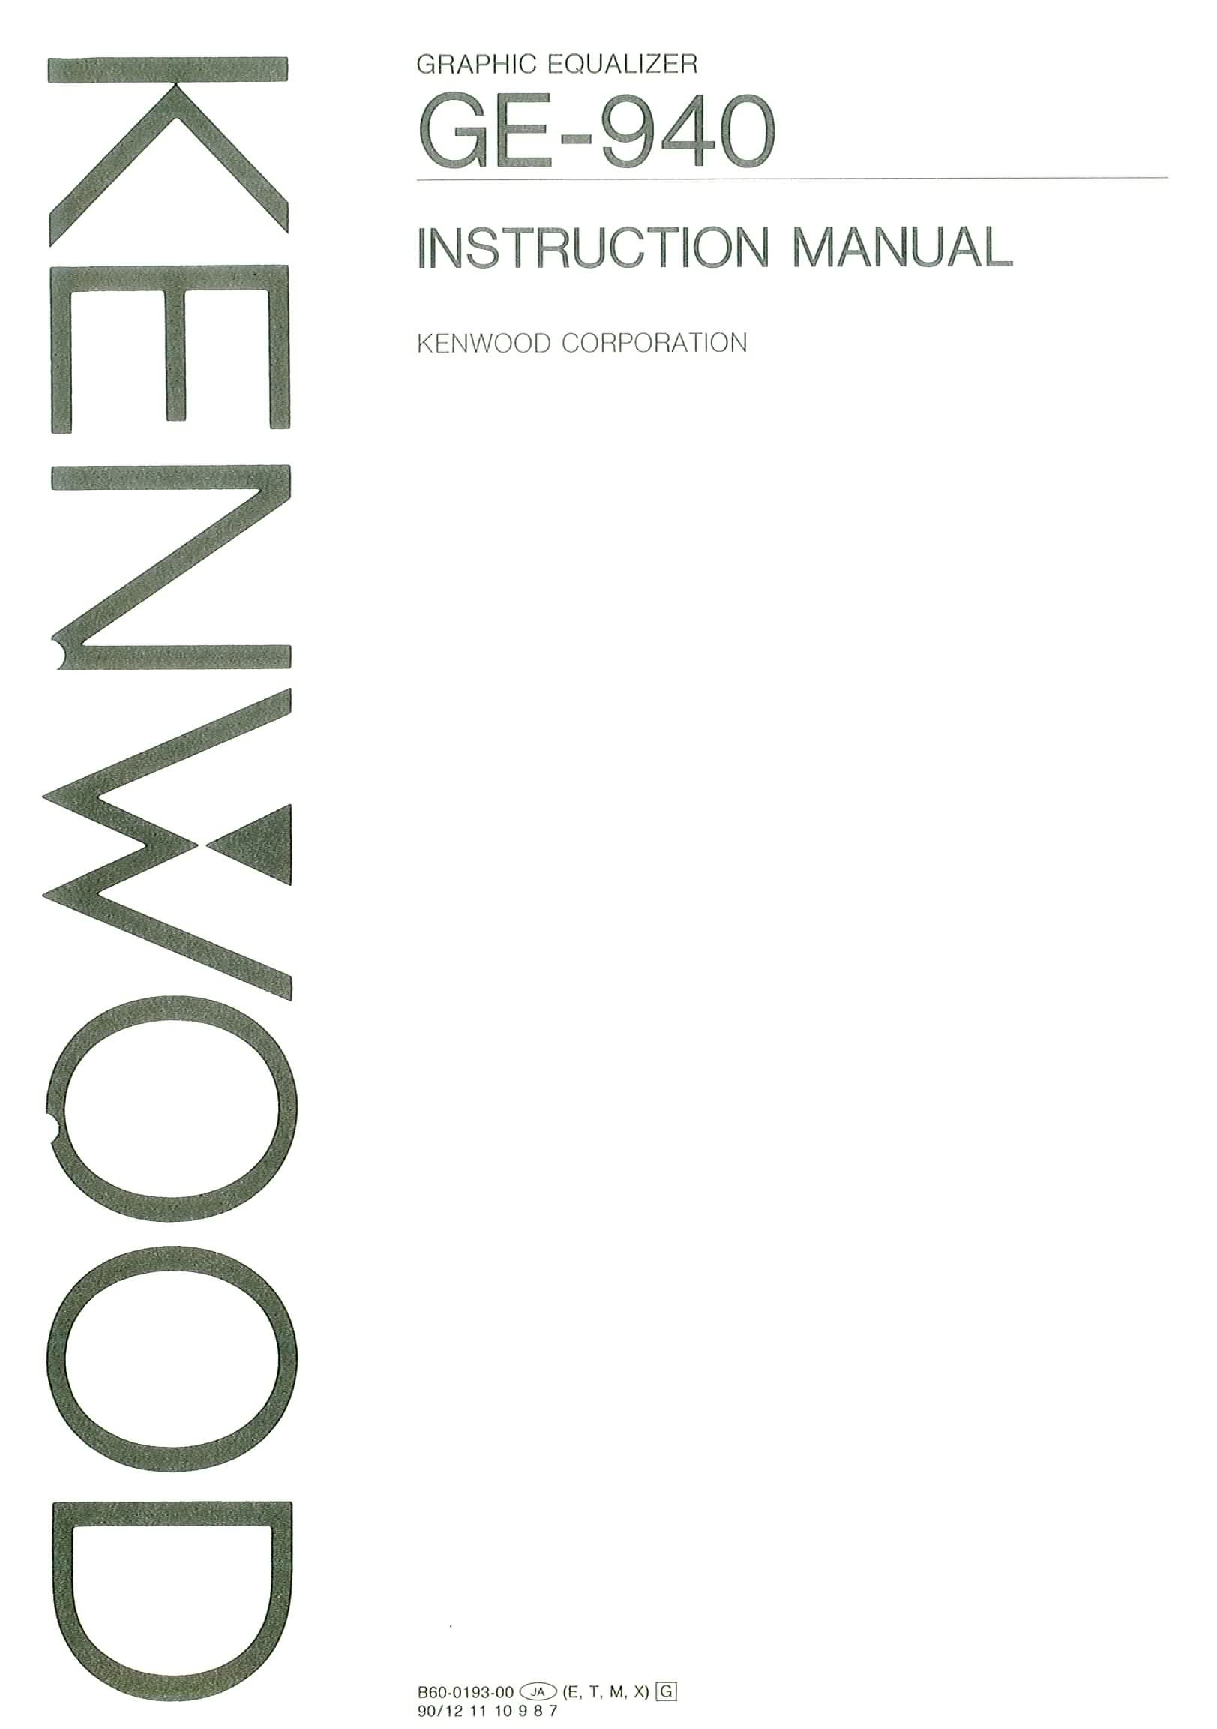 Kenwood GE-940 User Manual